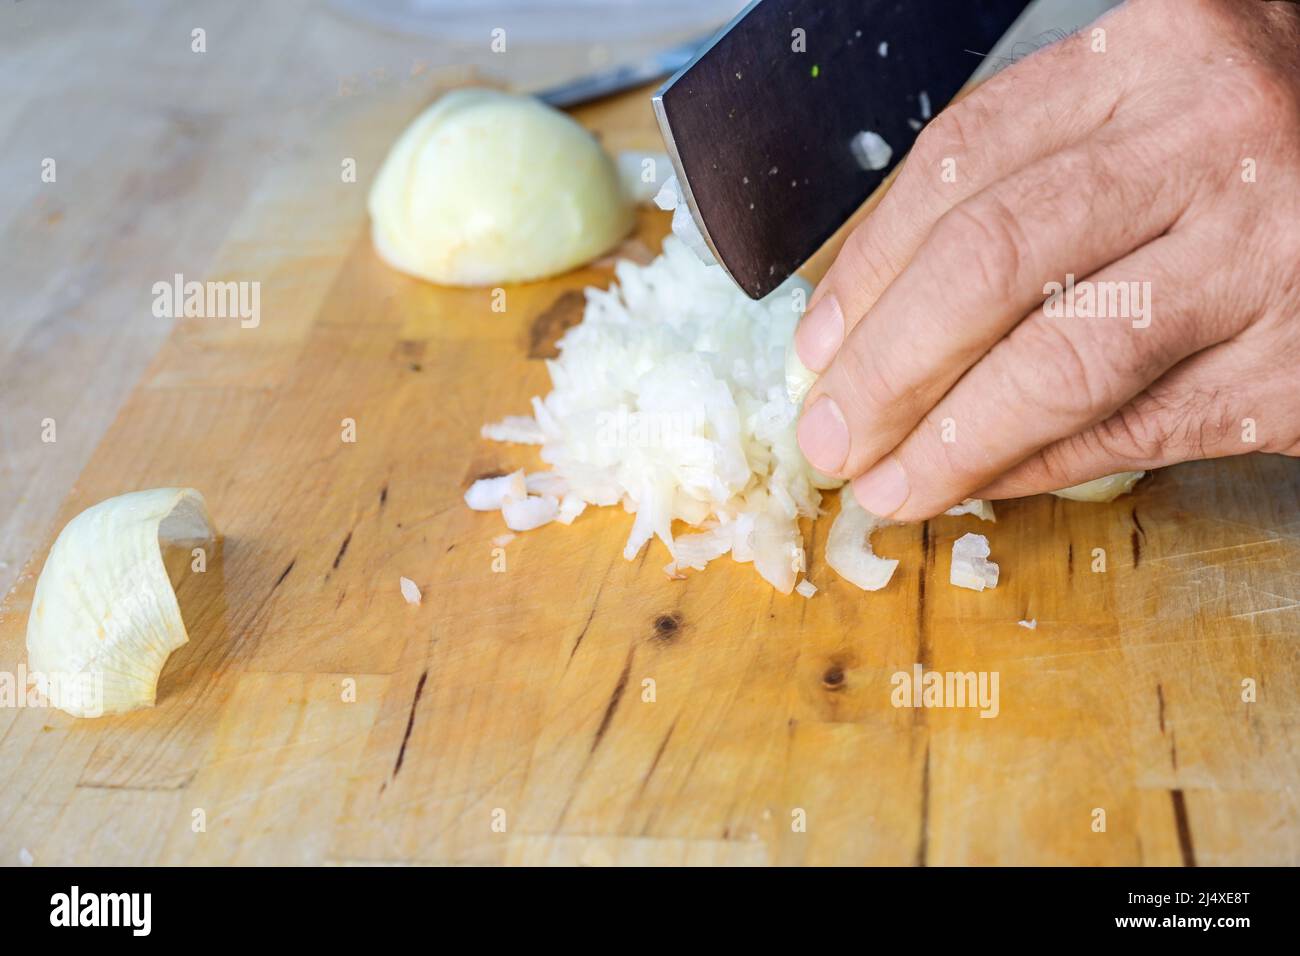 Main d'un homme coupant des oignons en petits cubes avec un couteau de cuisine sur une planche à découper en bois, espace de copie, mise au point sélectionnée, profondeur de champ étroite Banque D'Images